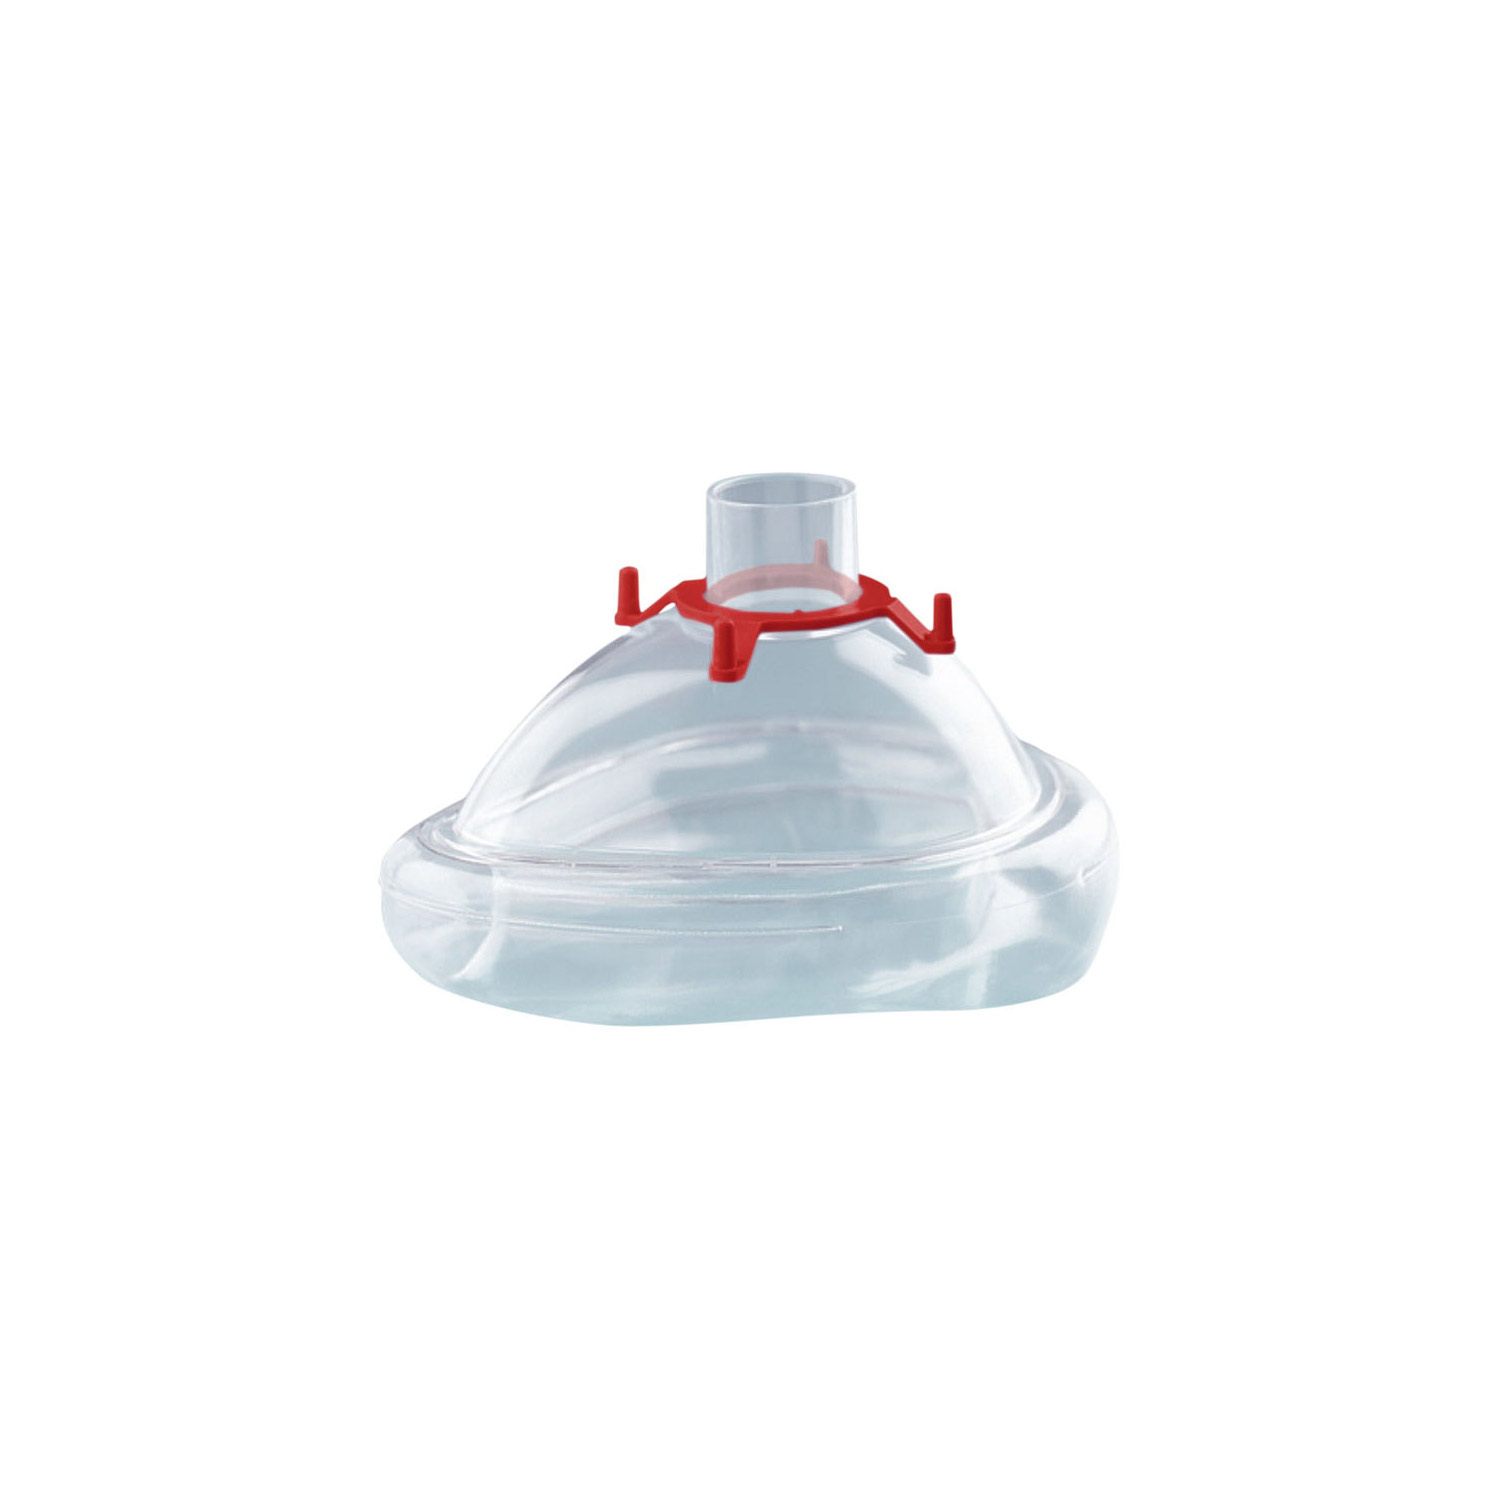 CPAP-/NIV-Einmalmaske mit Luftkissen, Größe M (Erwachsener), mit Haltering für Kopfbänderung